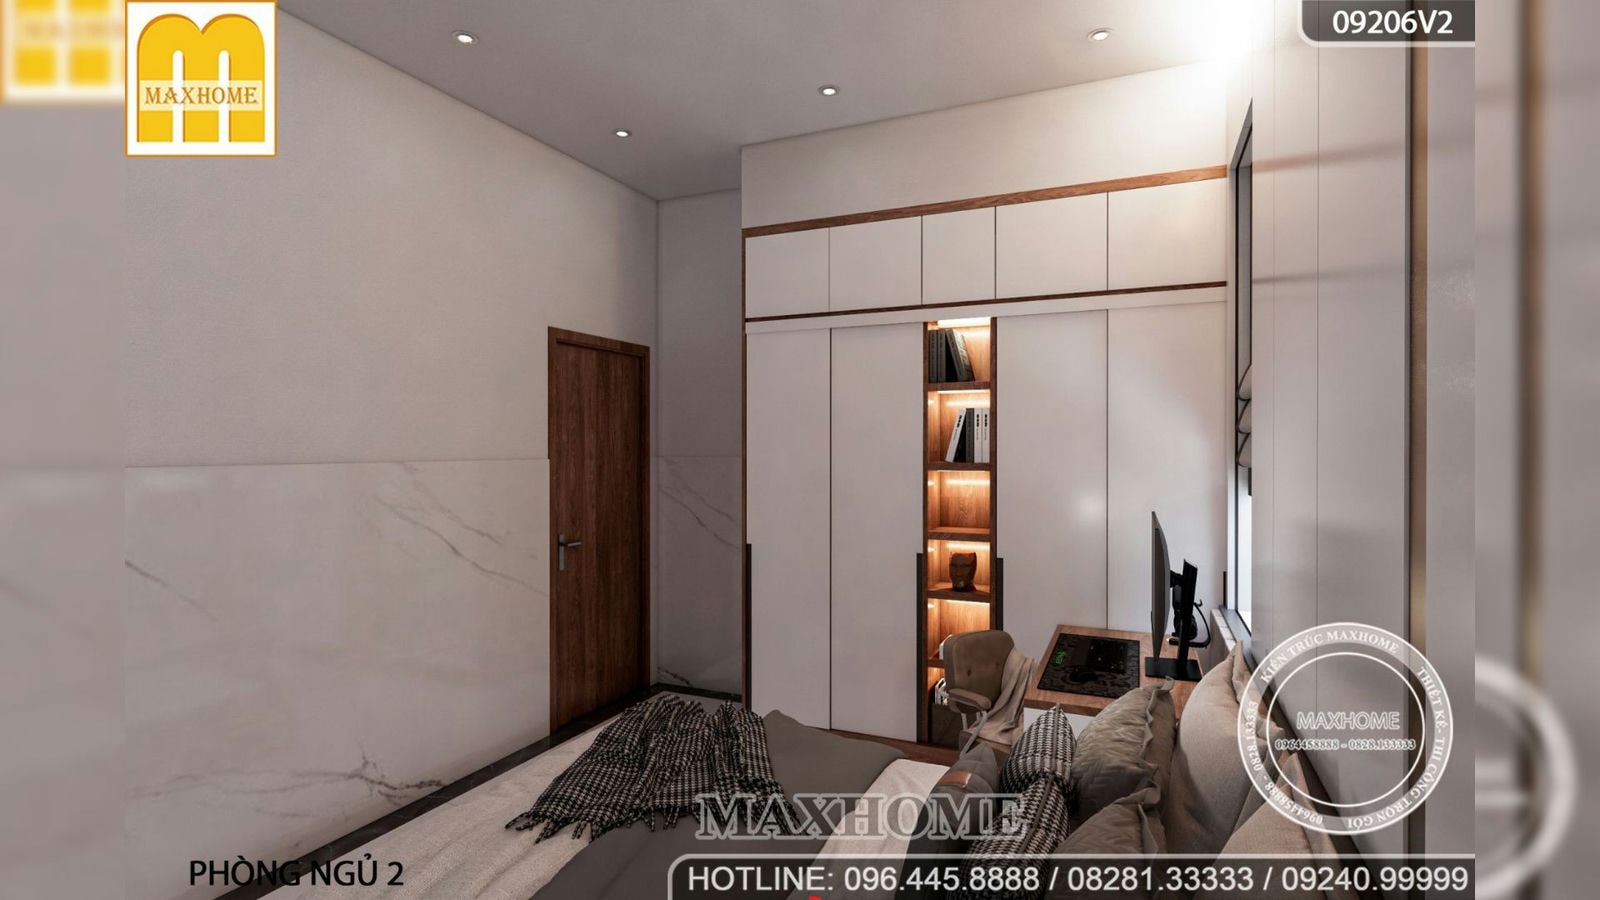 Thiết kế nội thất hiện đại cho nhà phố 4,8 x 15m ở Lâm Đồng | MH02613